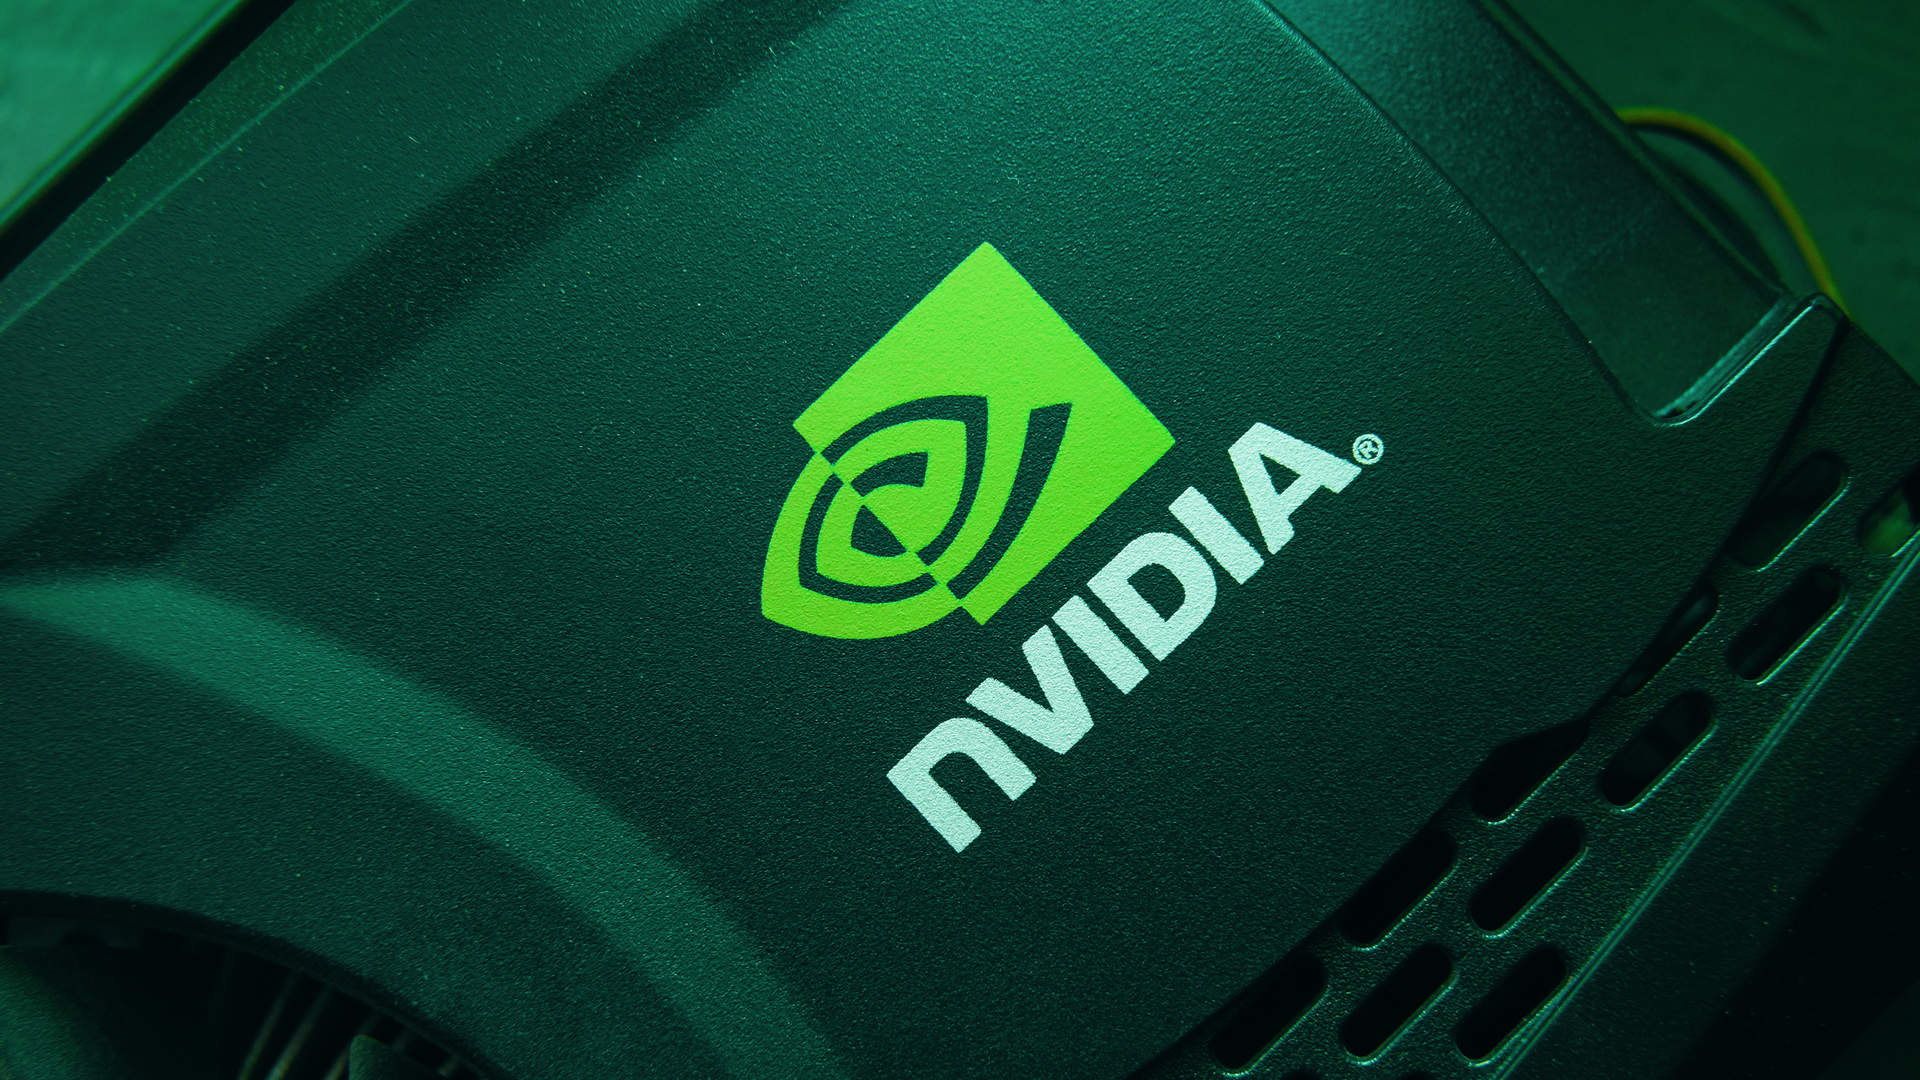 Nvidia Rtx 3080 Ti GPU Katémbong Dina Patokan Laptop Kaulinan Bocor